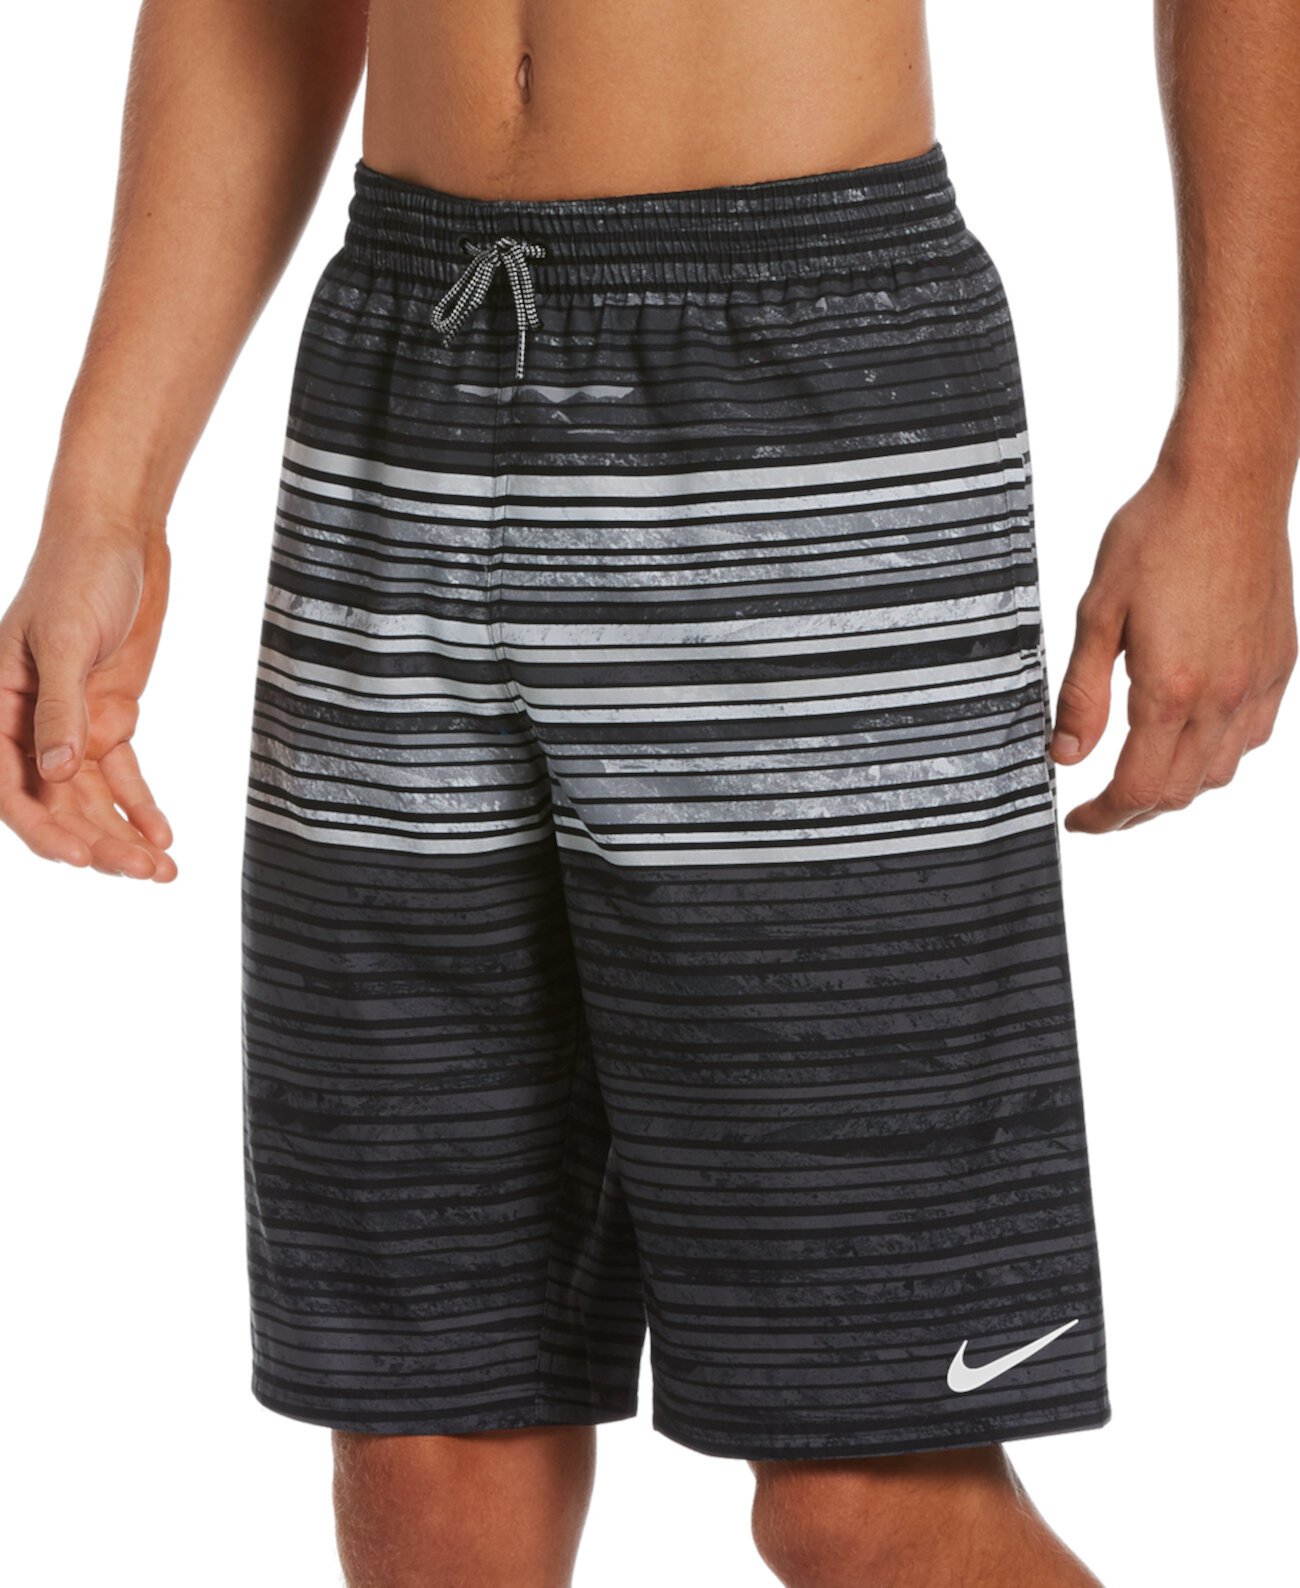 Мужские шорты 11 дюймов с открытыми полосками Big & Tall Nike